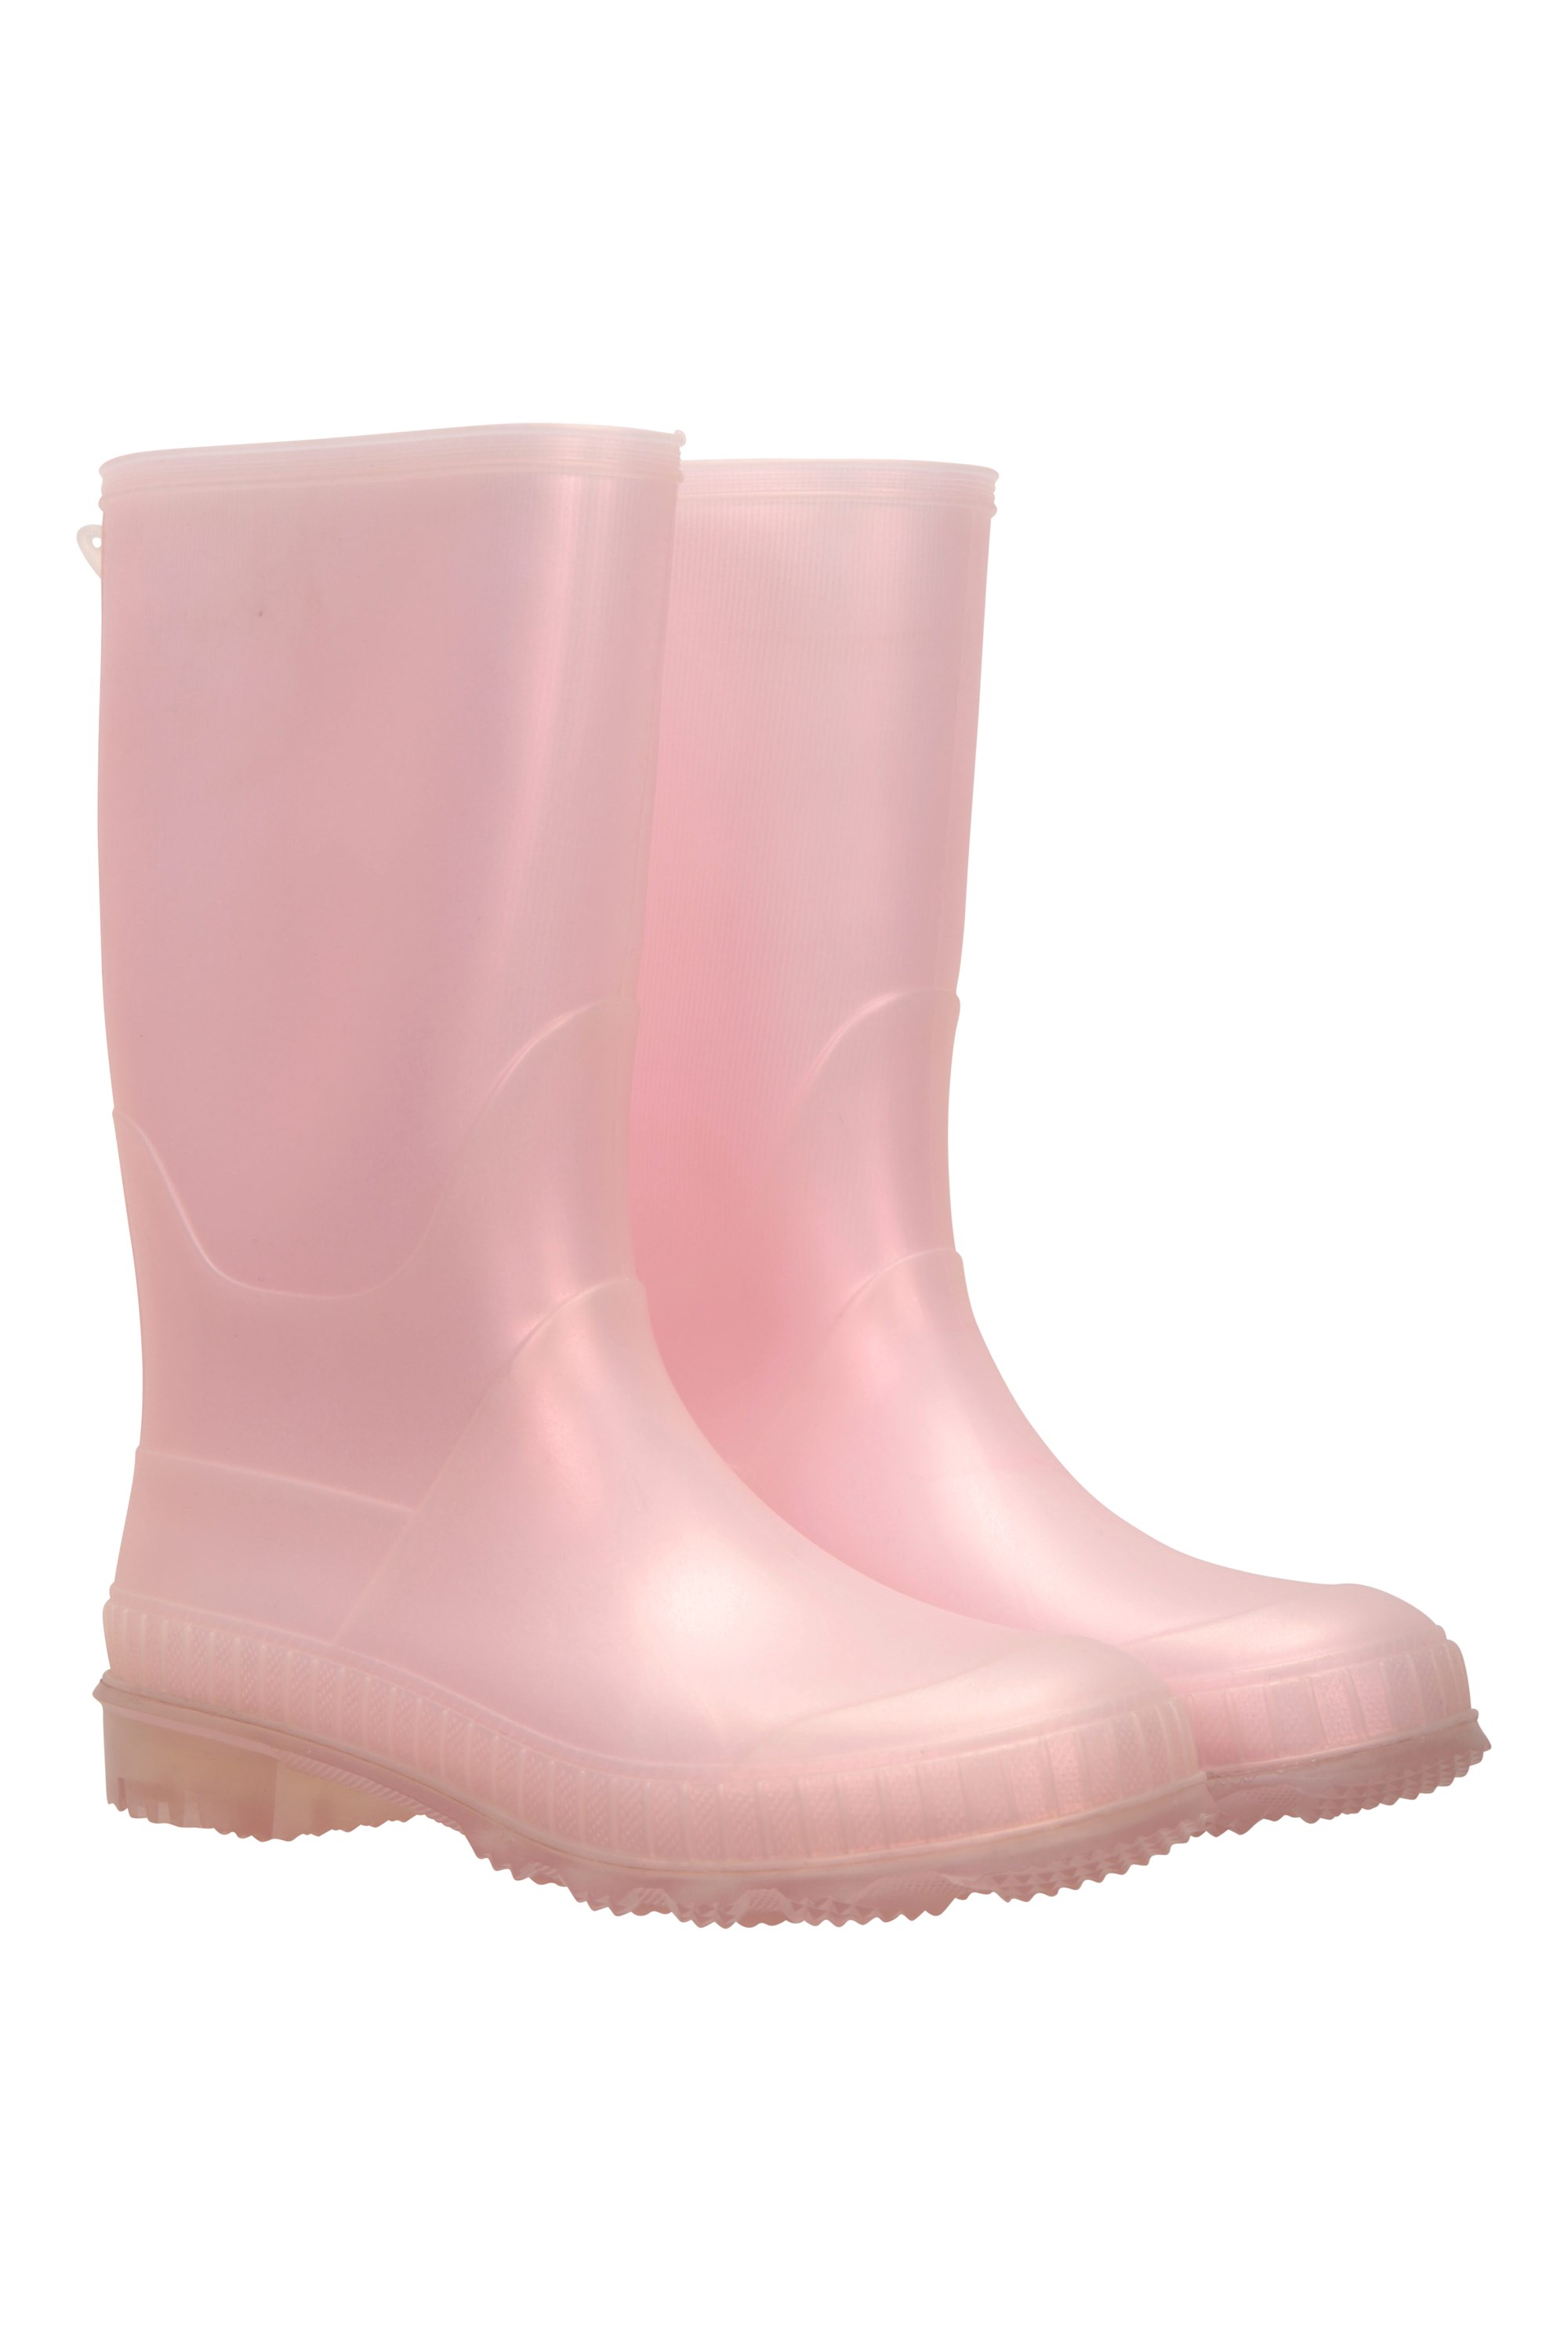 Plain Kids Rain Boots - Light Pink